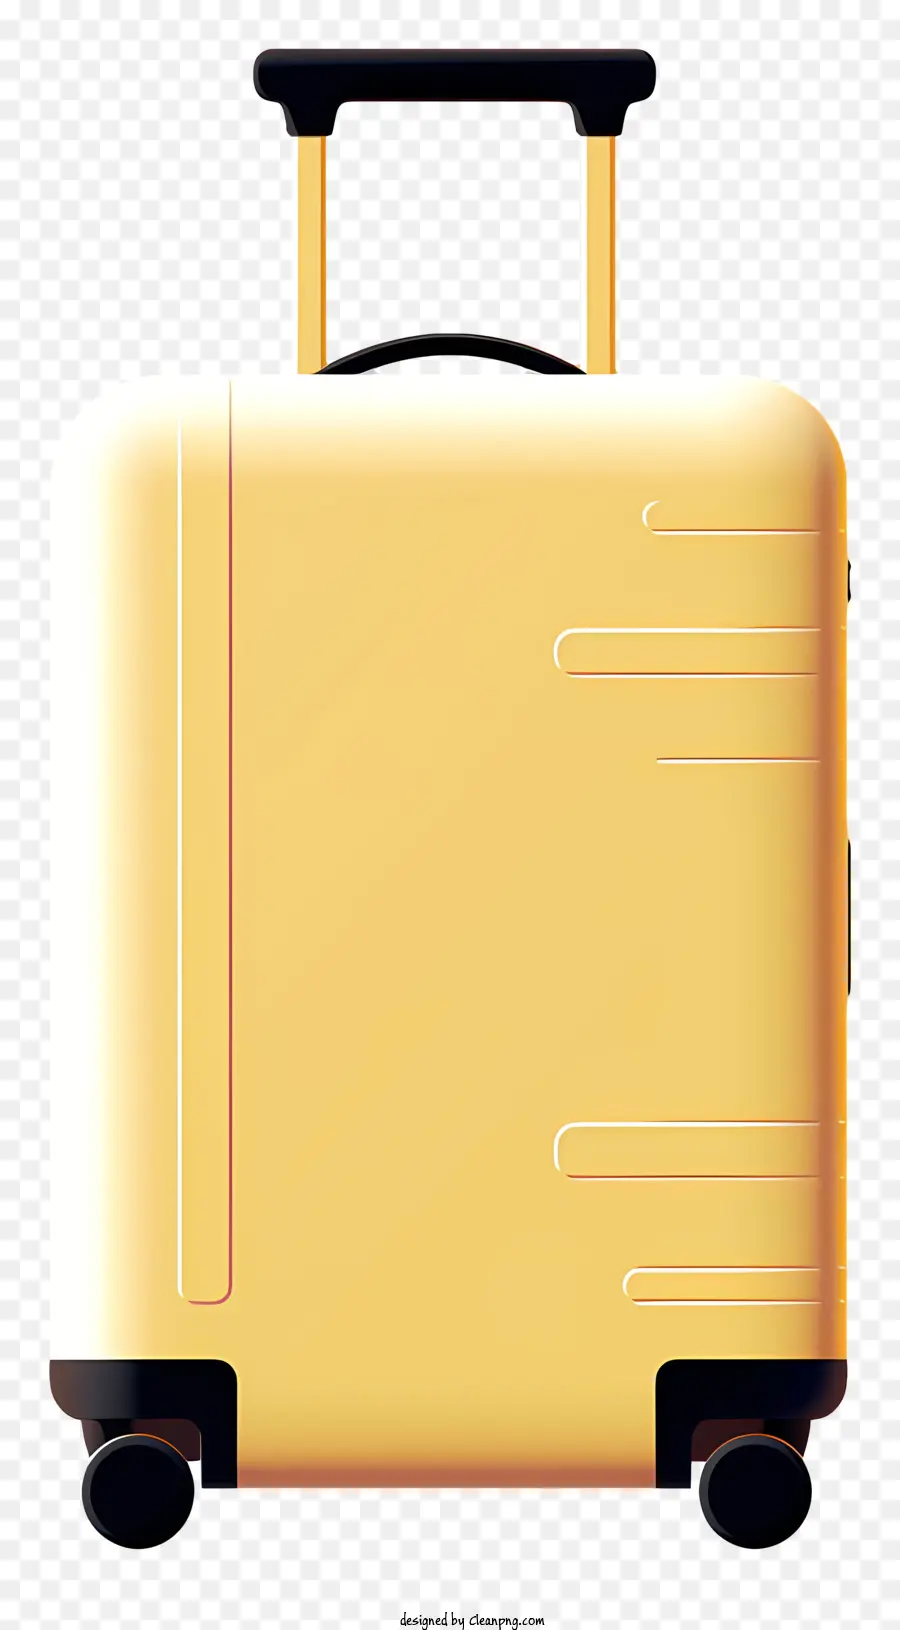 vali du lịch - Mô tả: Vali màu vàng với tay cầm màu đen và bánh xe bạc